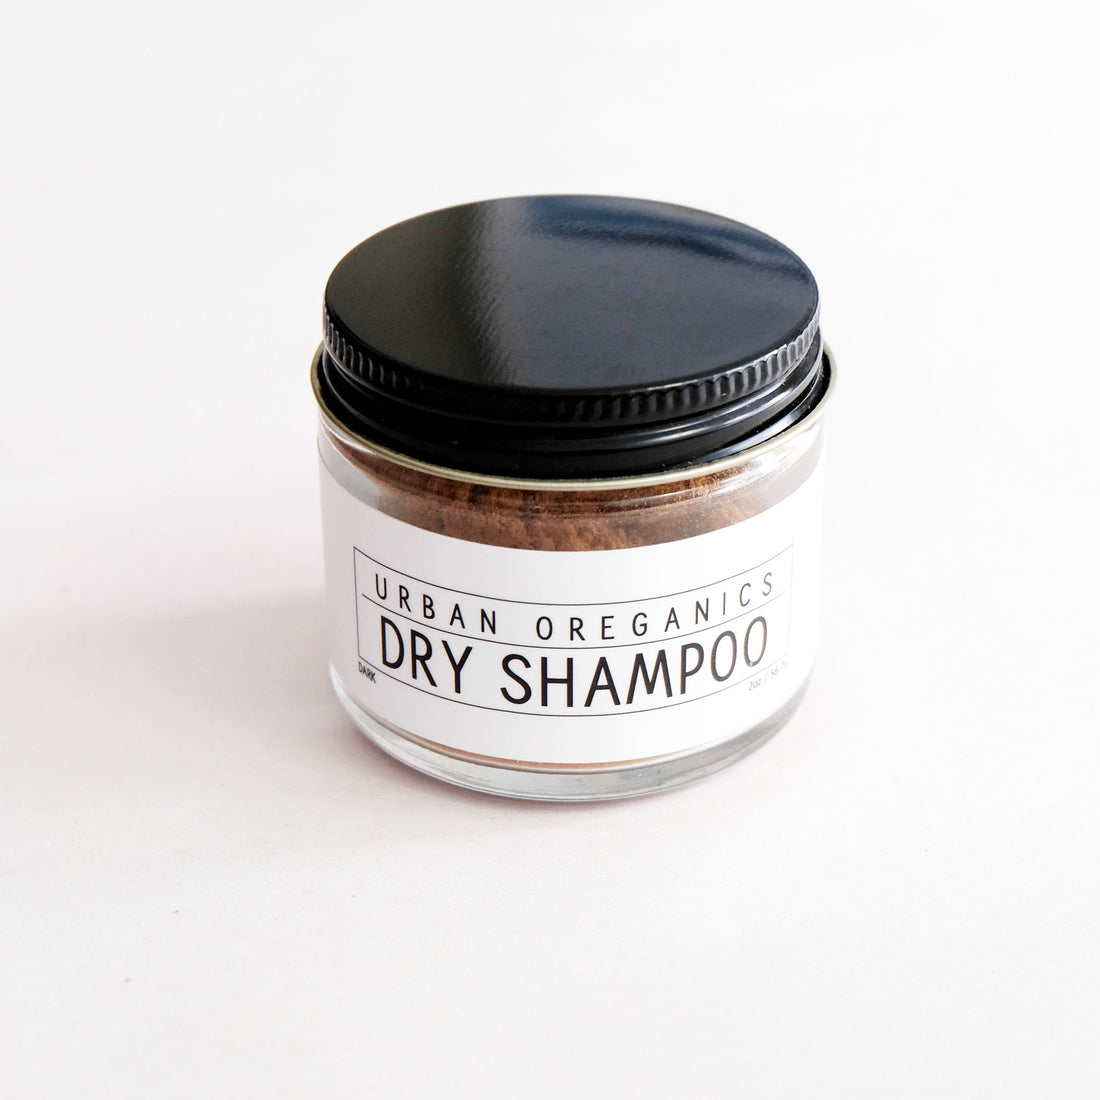 dry shampoo powder for dark hair